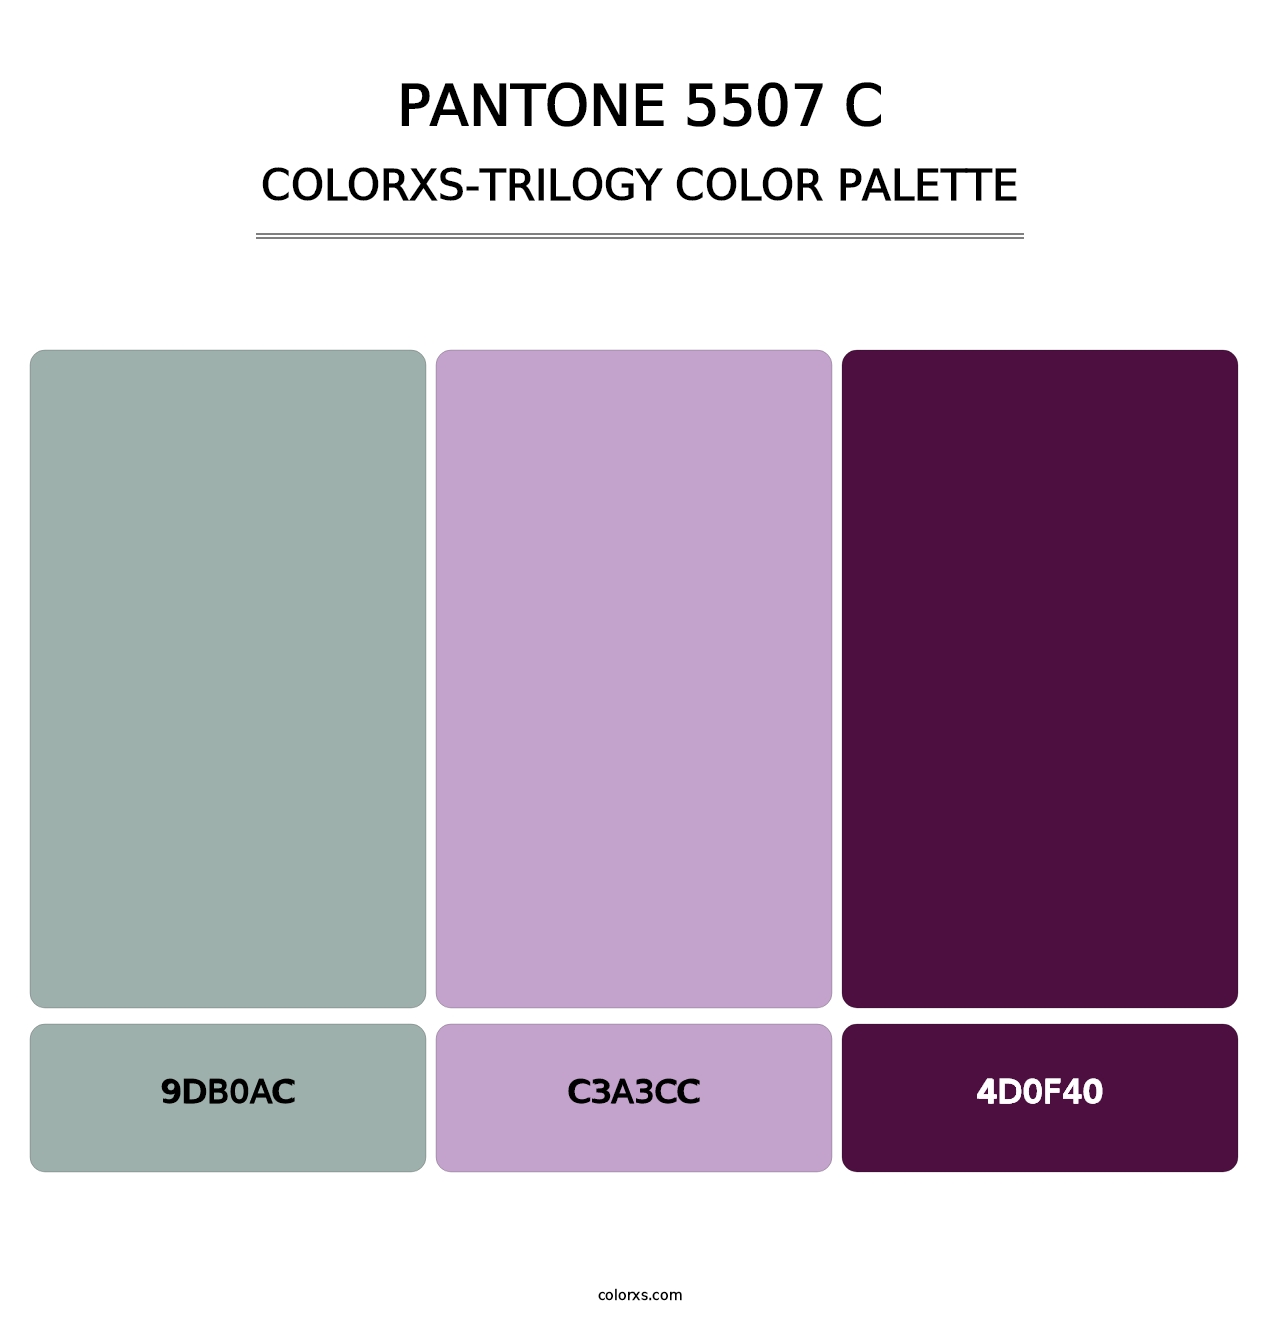 PANTONE 5507 C - Colorxs Trilogy Palette